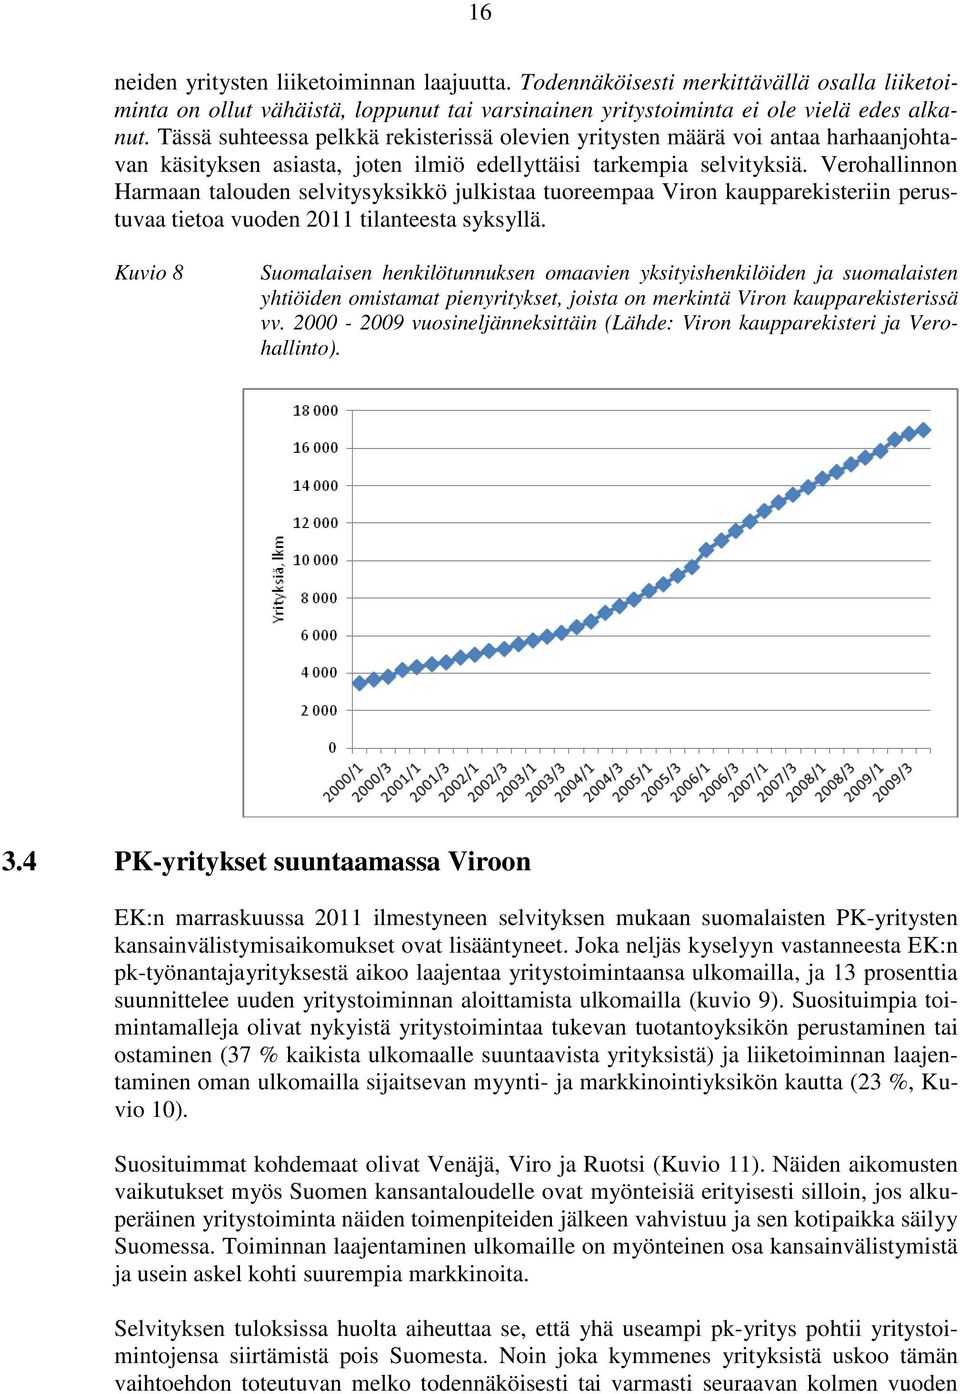 Verohallinnon Harmaan talouden selvitysyksikkö julkistaa tuoreempaa Viron kaupparekisteriin perustuvaa tietoa vuoden 2011 tilanteesta syksyllä.